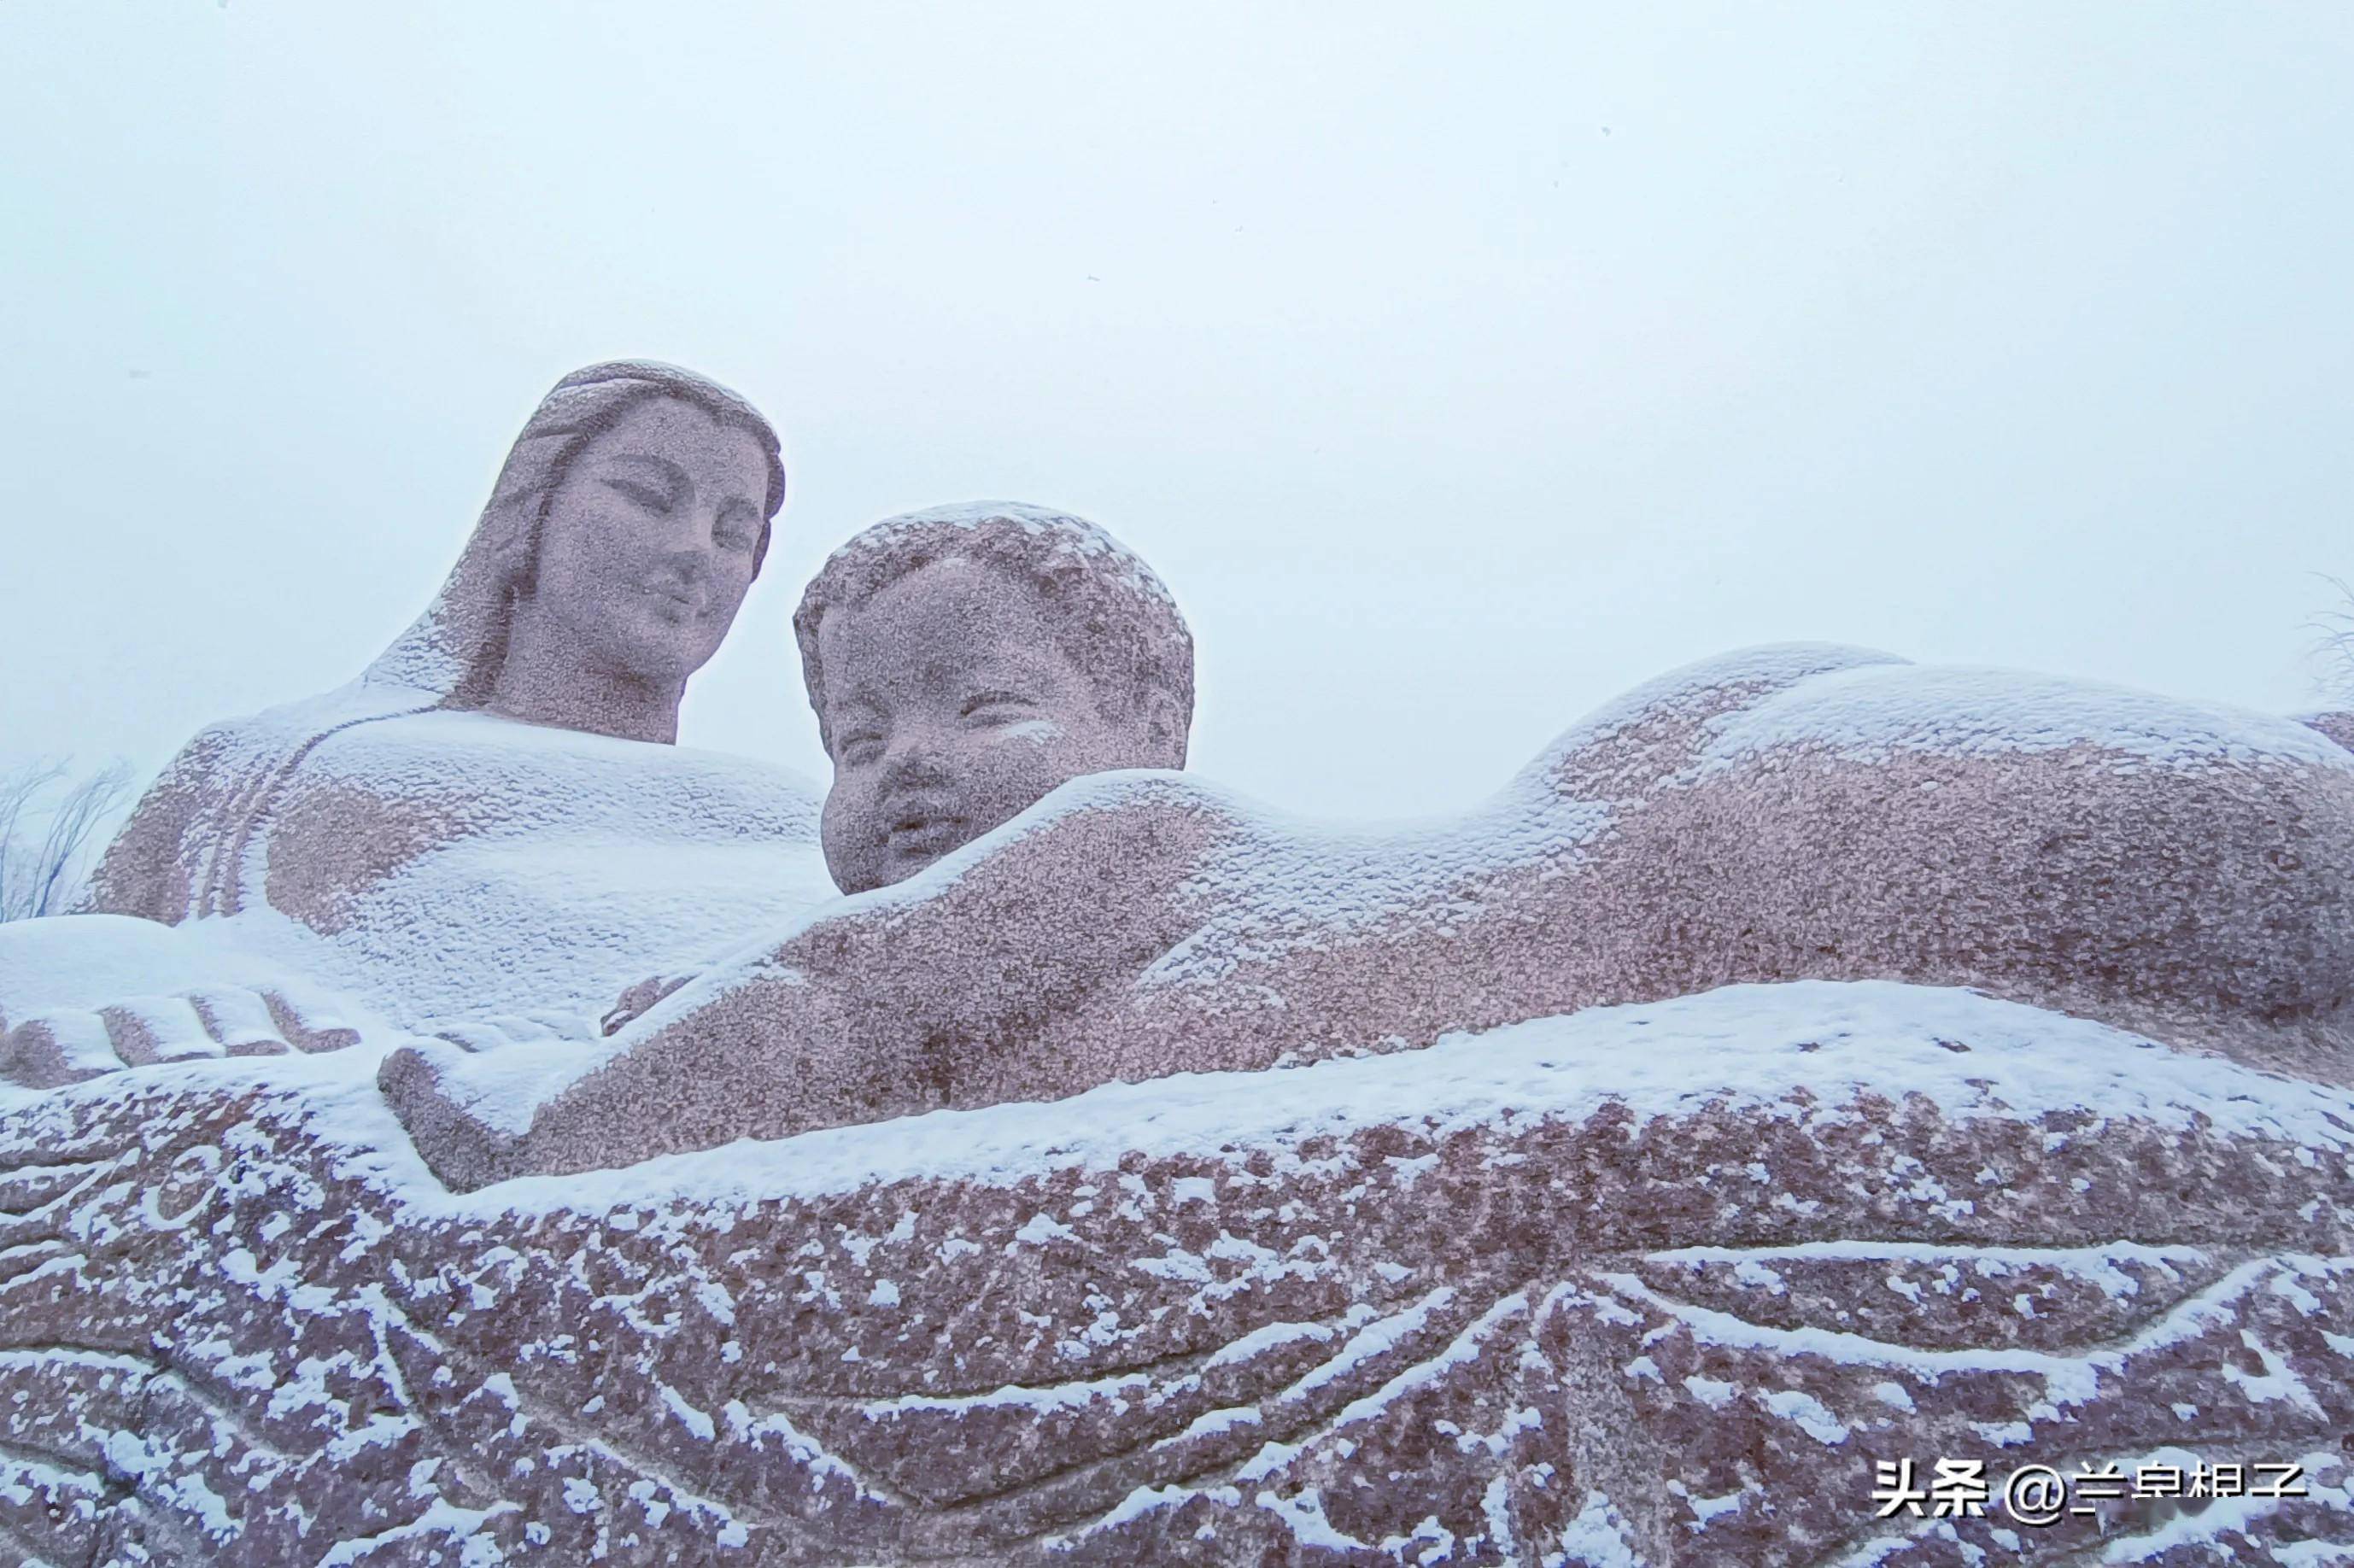 雪中的黄河母亲雕像别有一番韵味,雪花纷纷扬扬地飘落,给雕像披上了一